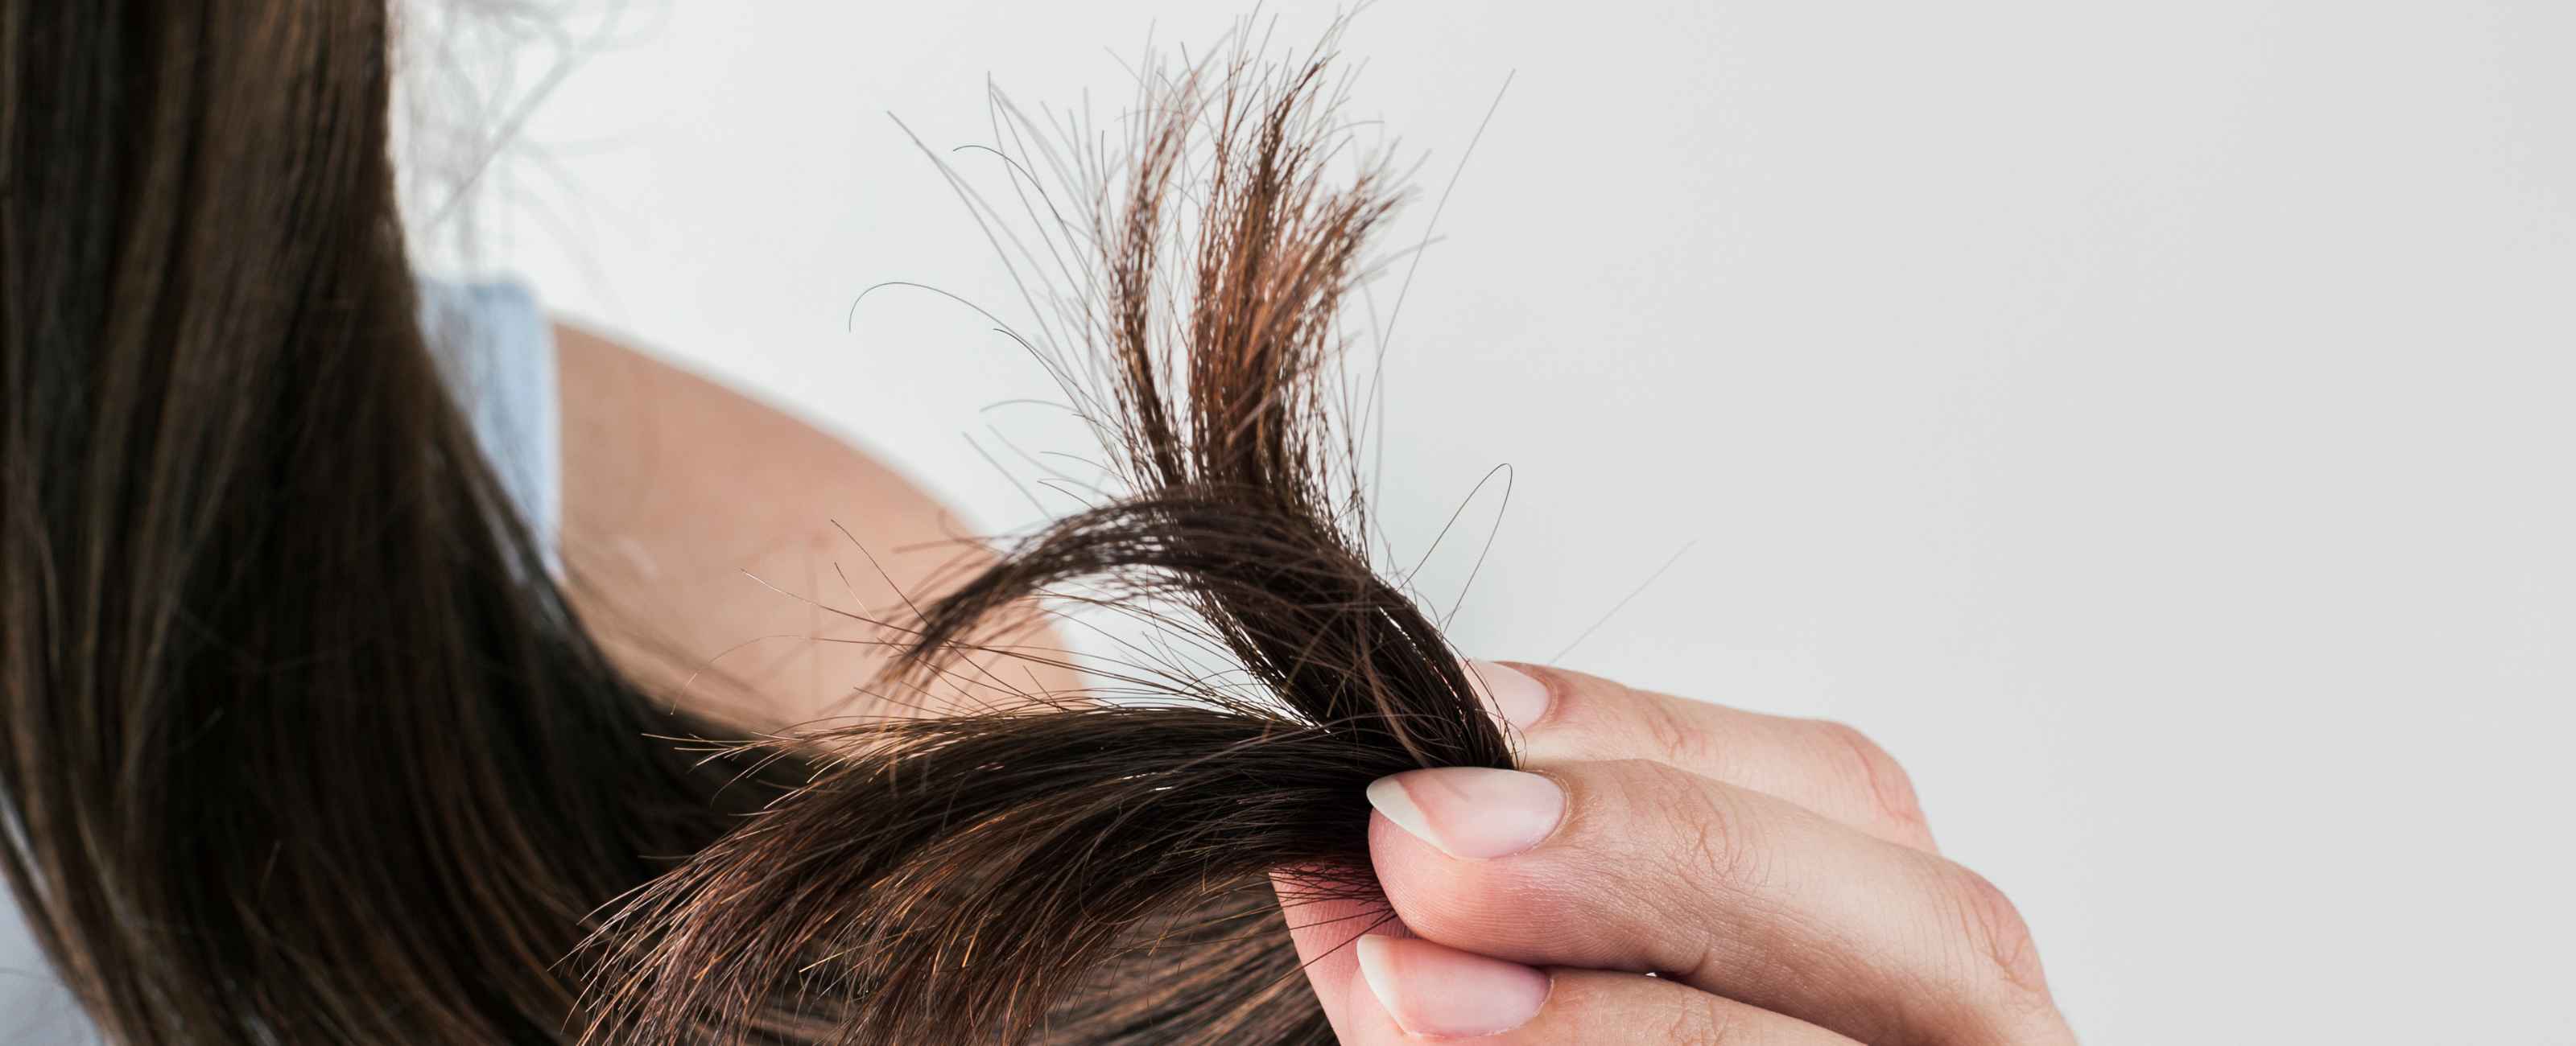 La kératine est une protéine essentielle qui compose le cheveu.